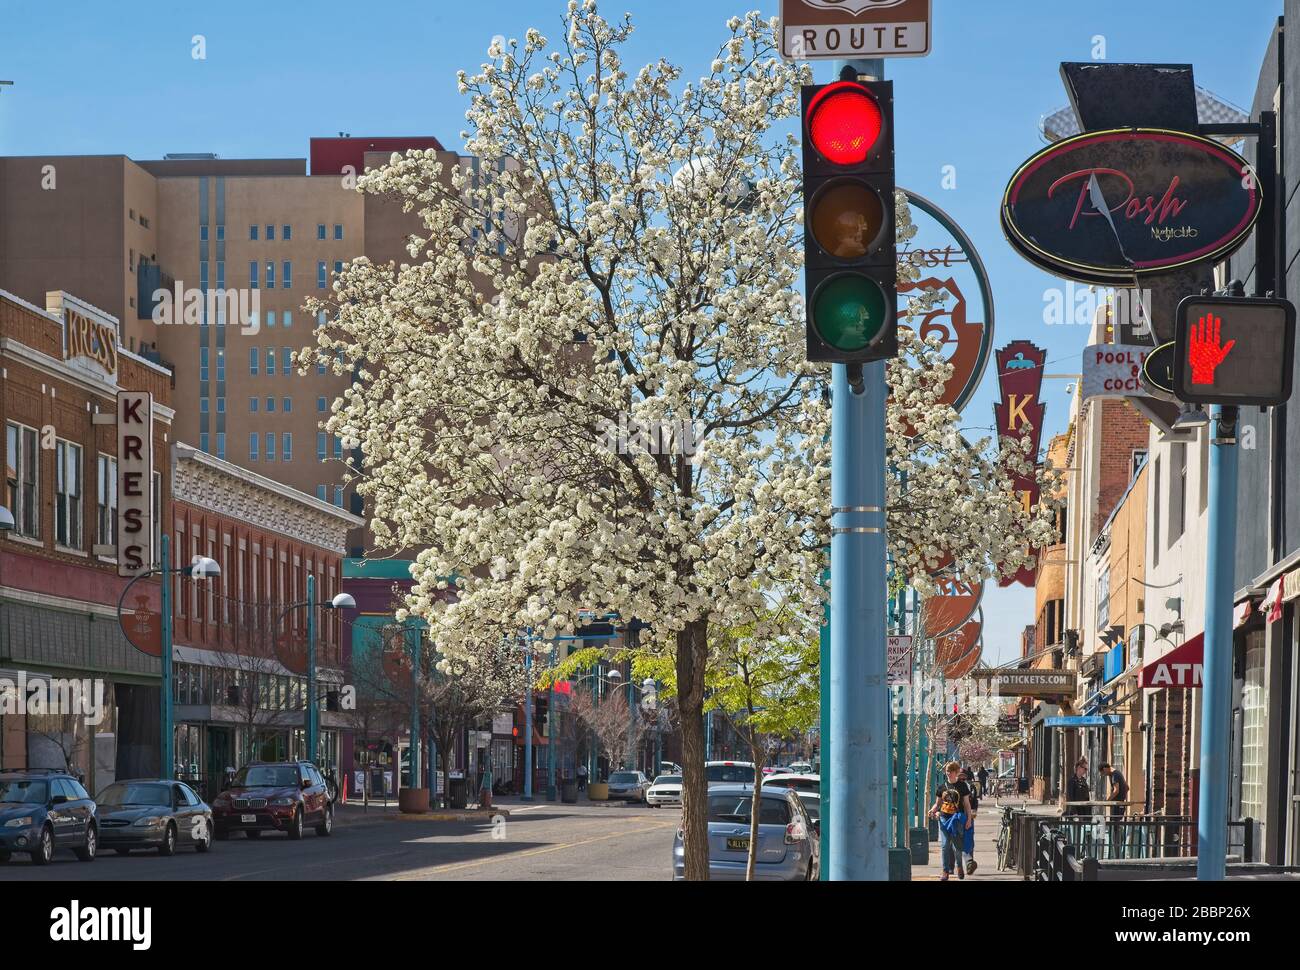 Blühende Bäume an der Central Ave. In Albuquerque zeigen ein geringes Verkehrsaufkommen aufgrund einer Pandemie. Stockfoto